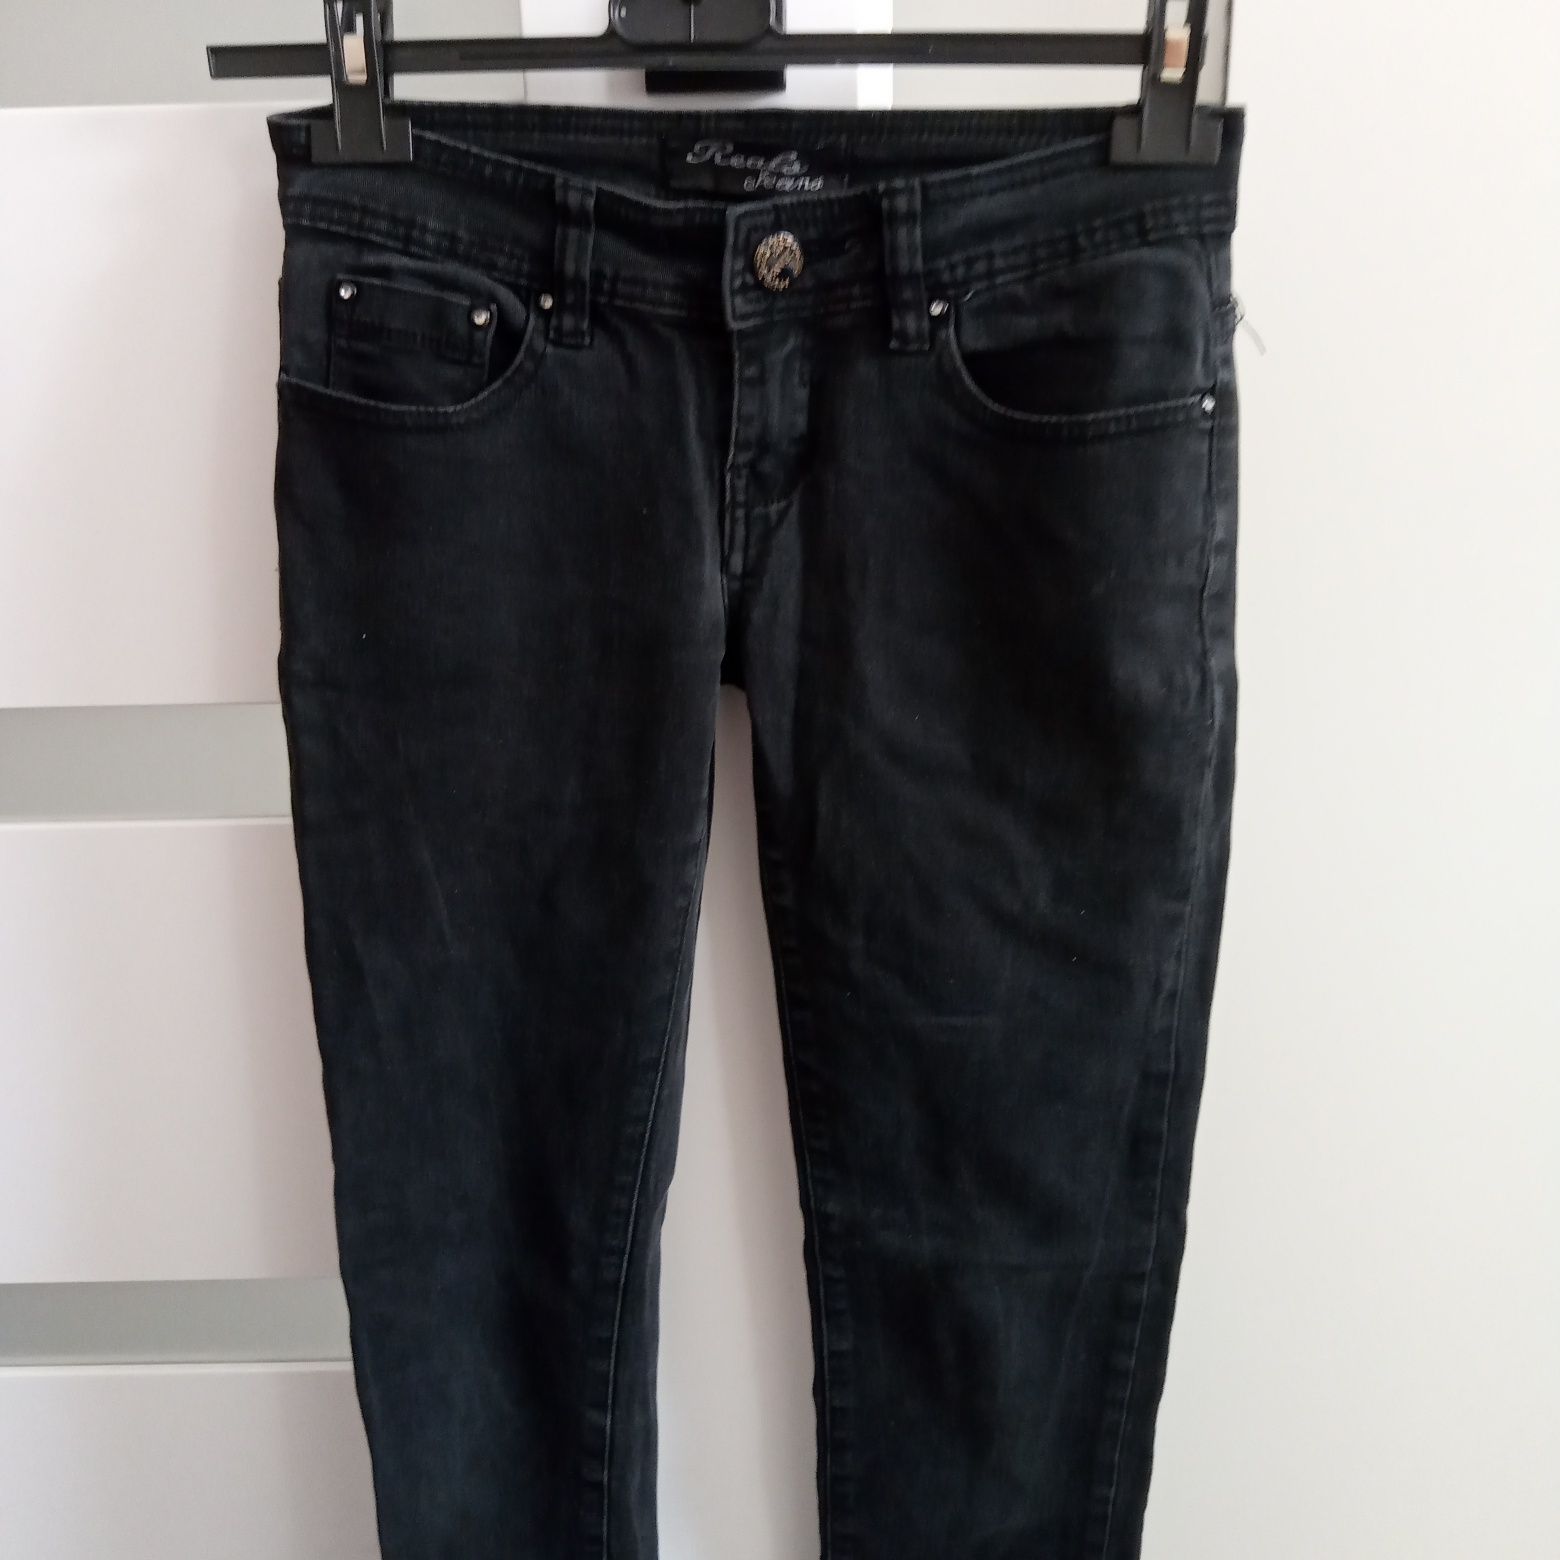 Spodnie jeansy rozmiar 34/36